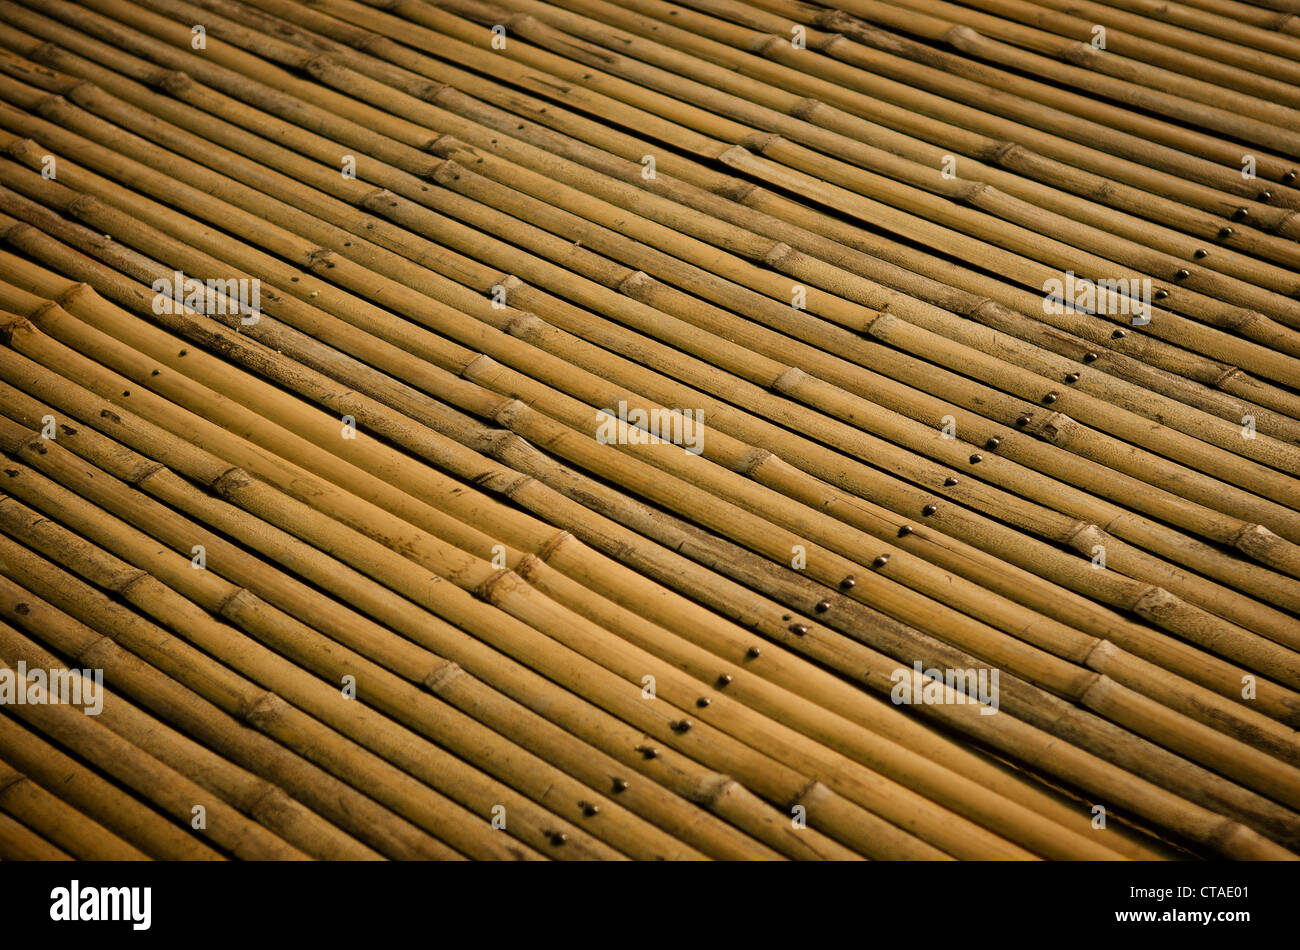 Dettaglio della superficie di bambù Foto Stock